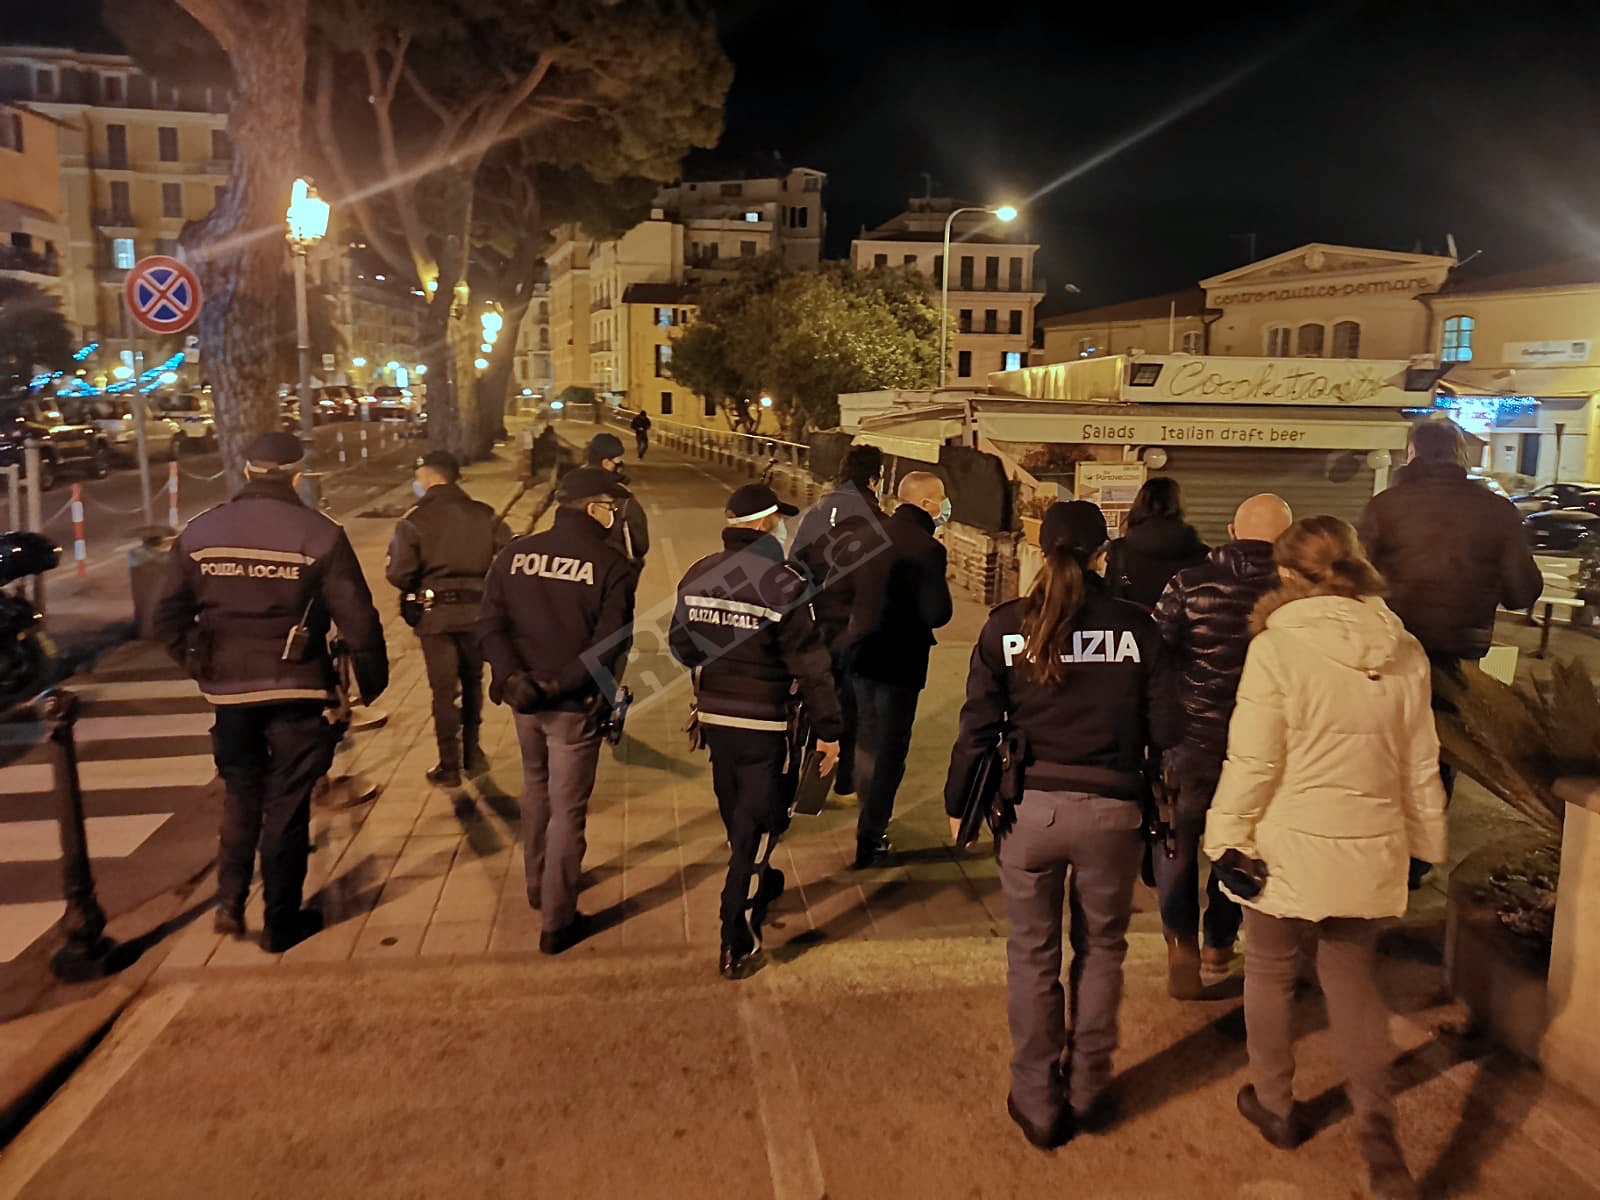 Ioapro Sanremo controlli foze dell'ordine notturna carabinieri polizia municipale polizia_02